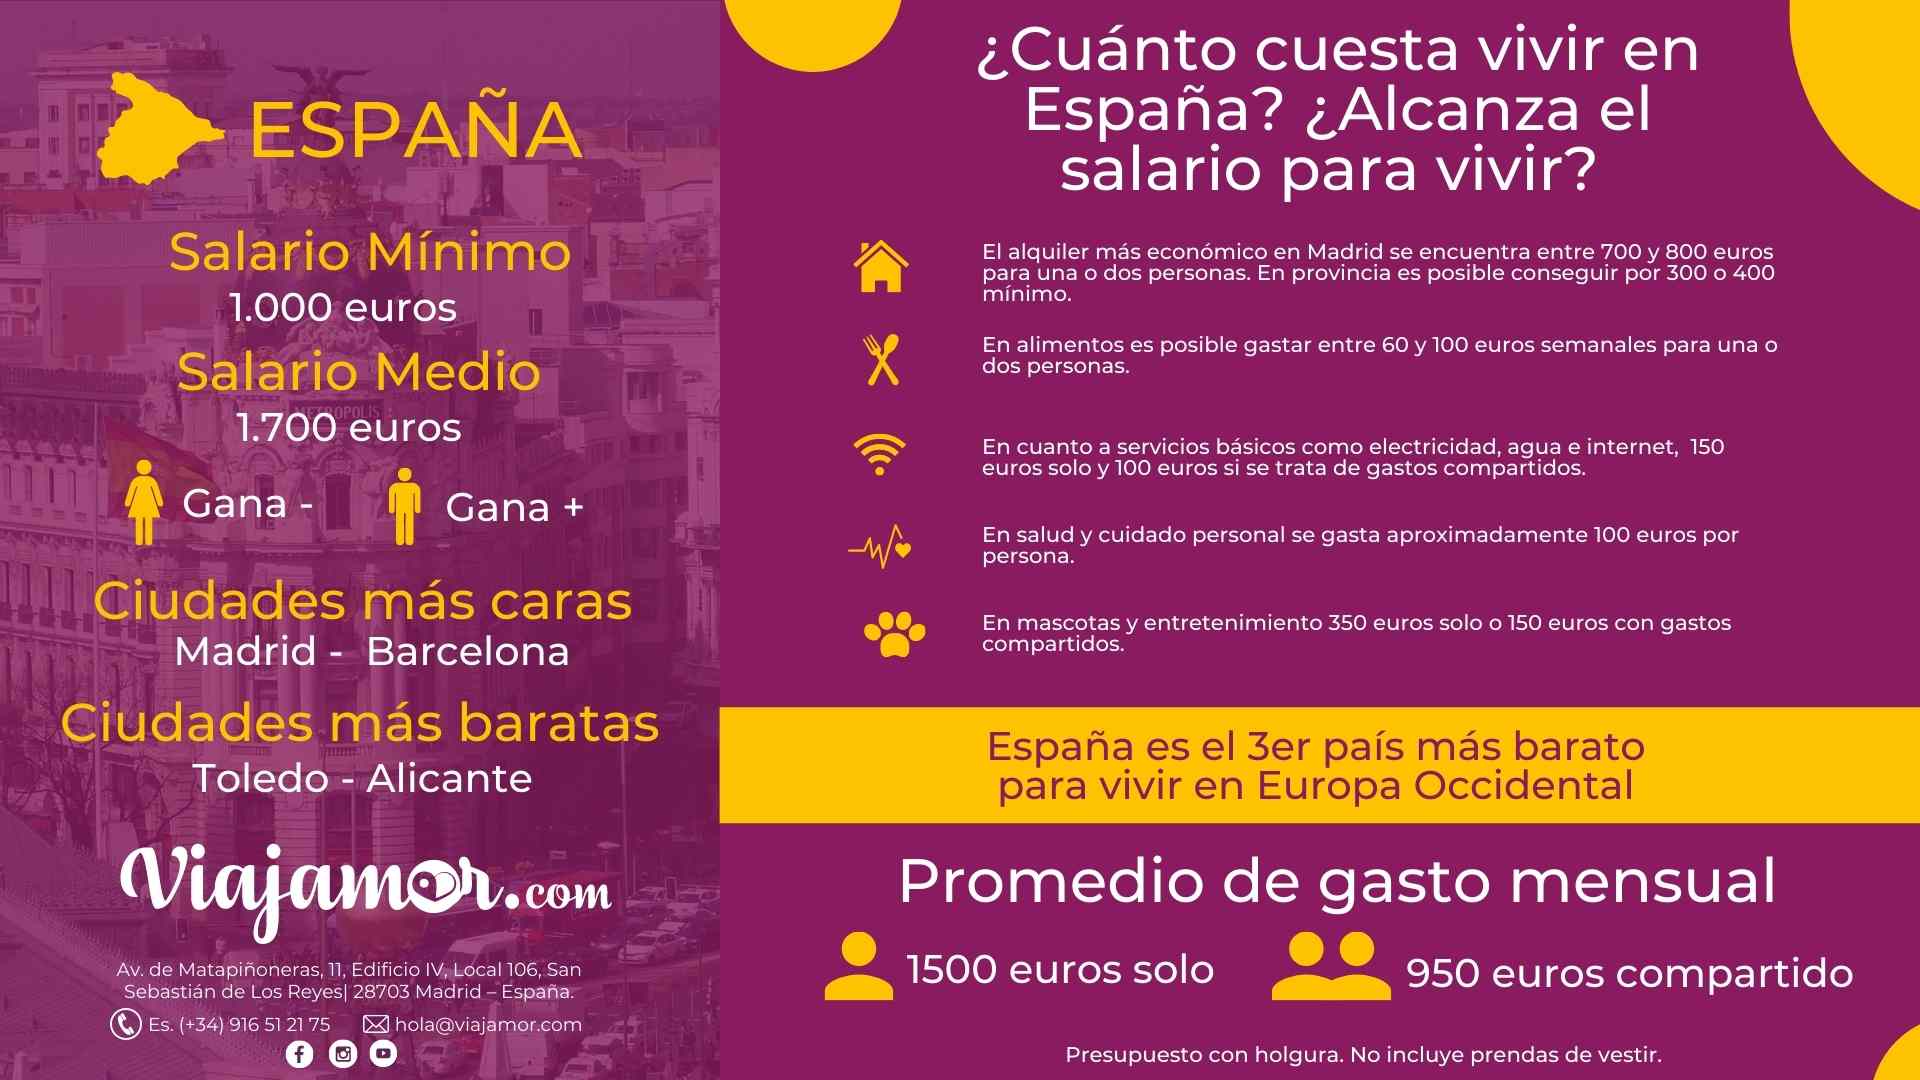 ¿Cuánto cuesta vivir en España? ¿Alcanza el salario para vivir?